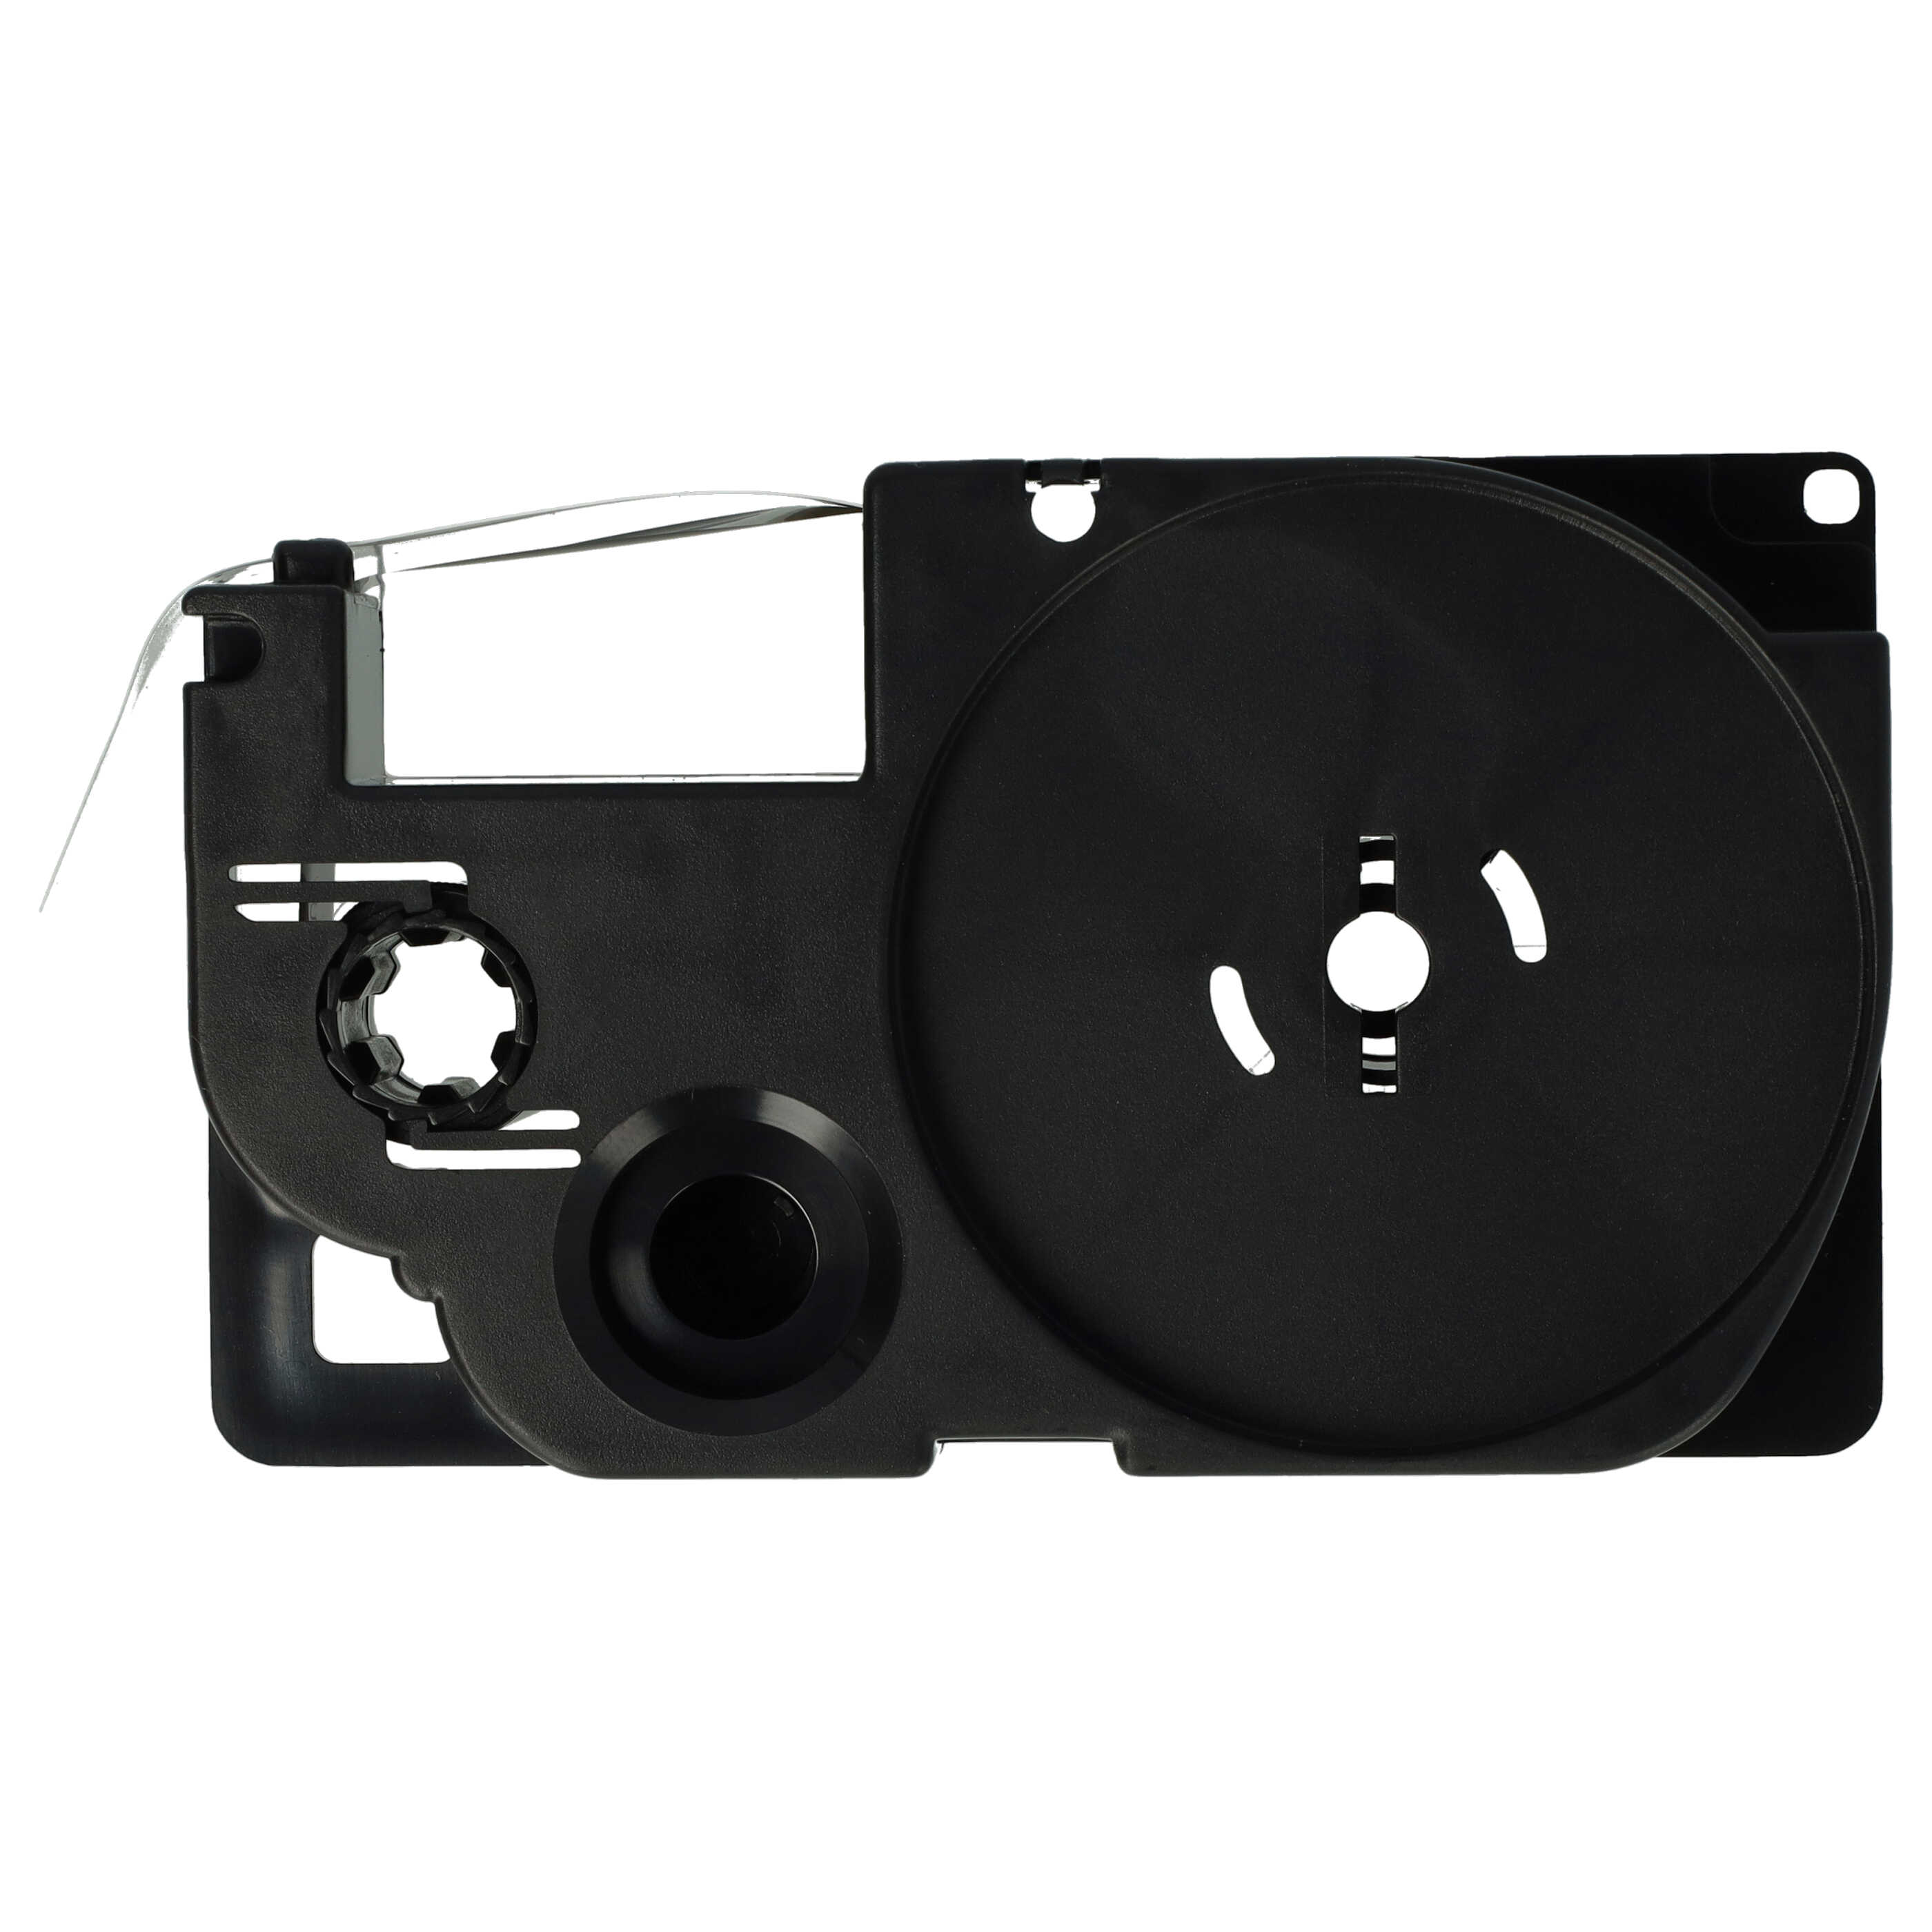 3x Cassettes à ruban remplacent Casio XR-12WE, XR-12WE1 - 12mm lettrage Noir ruban Blanc